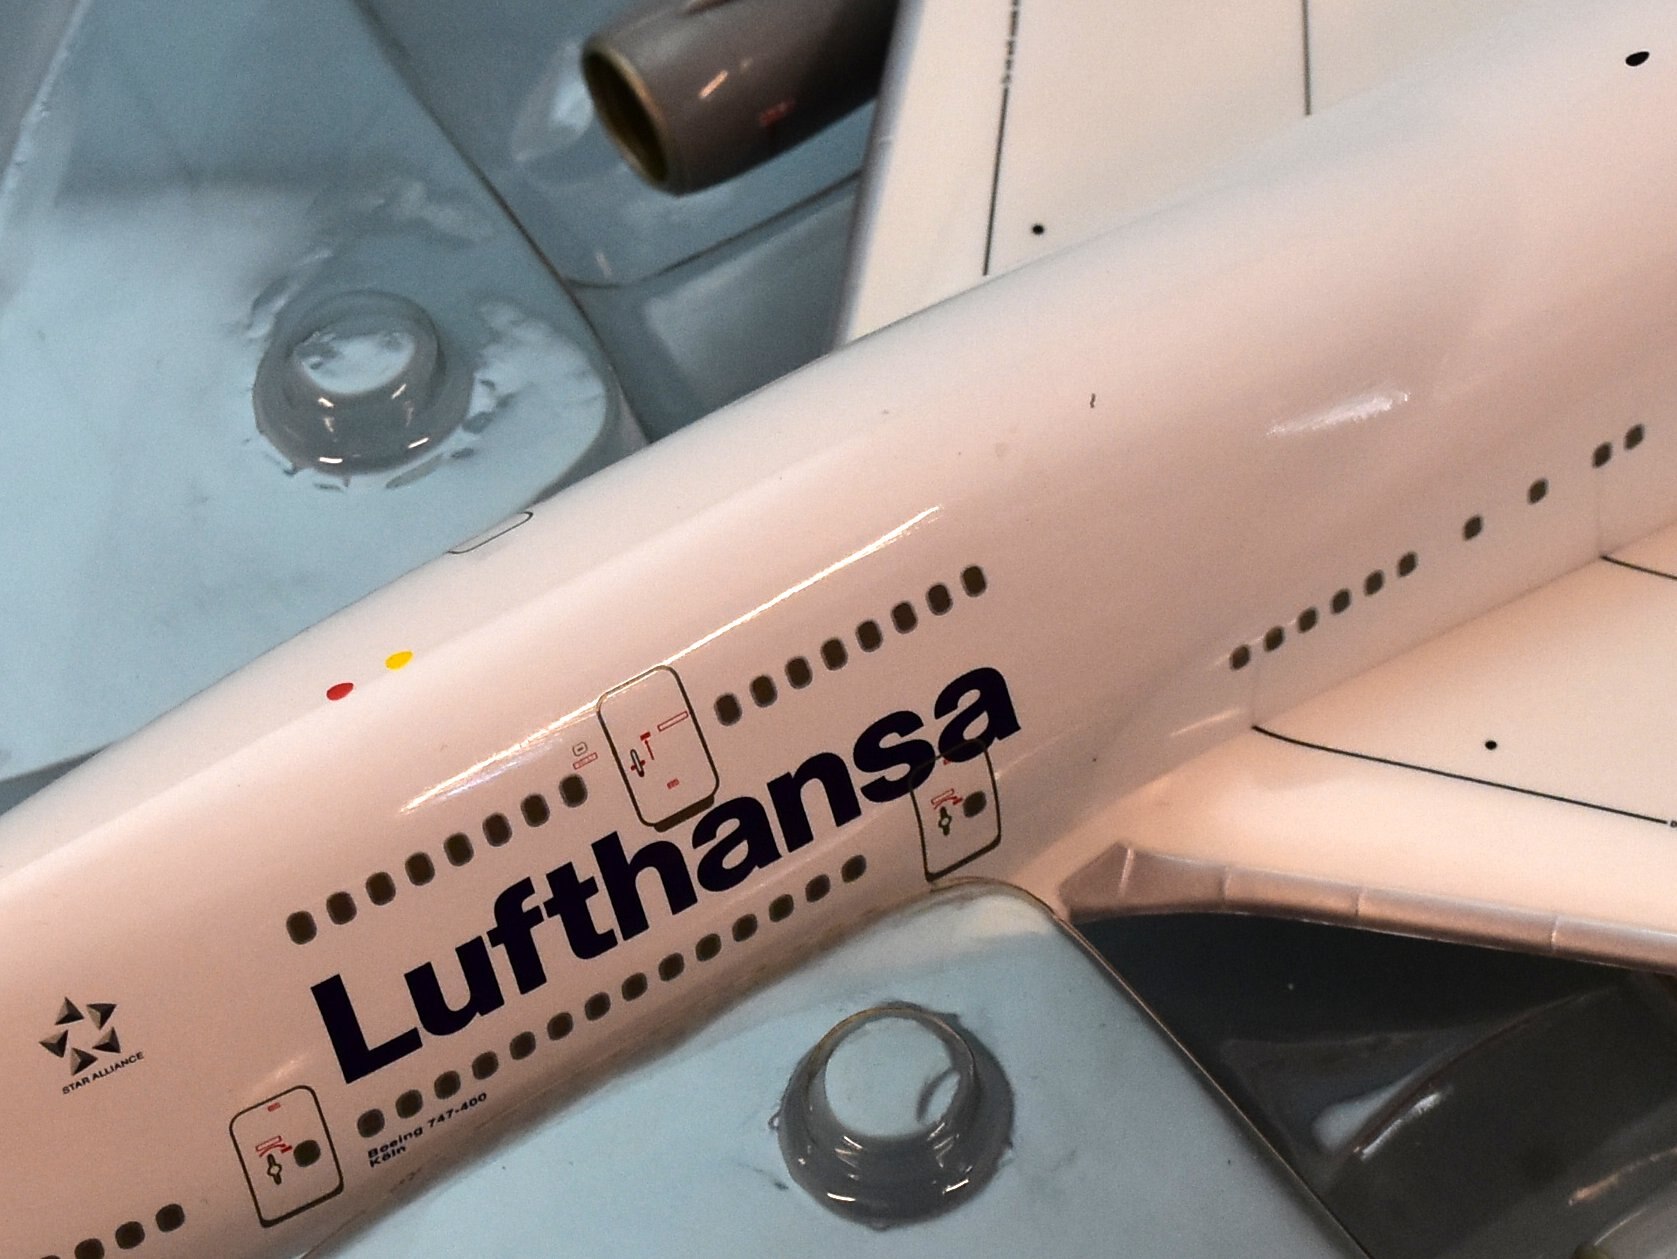 herpa 1/200 Lufthansa/Boeing 747-400 Koln/D-ABVR 550031